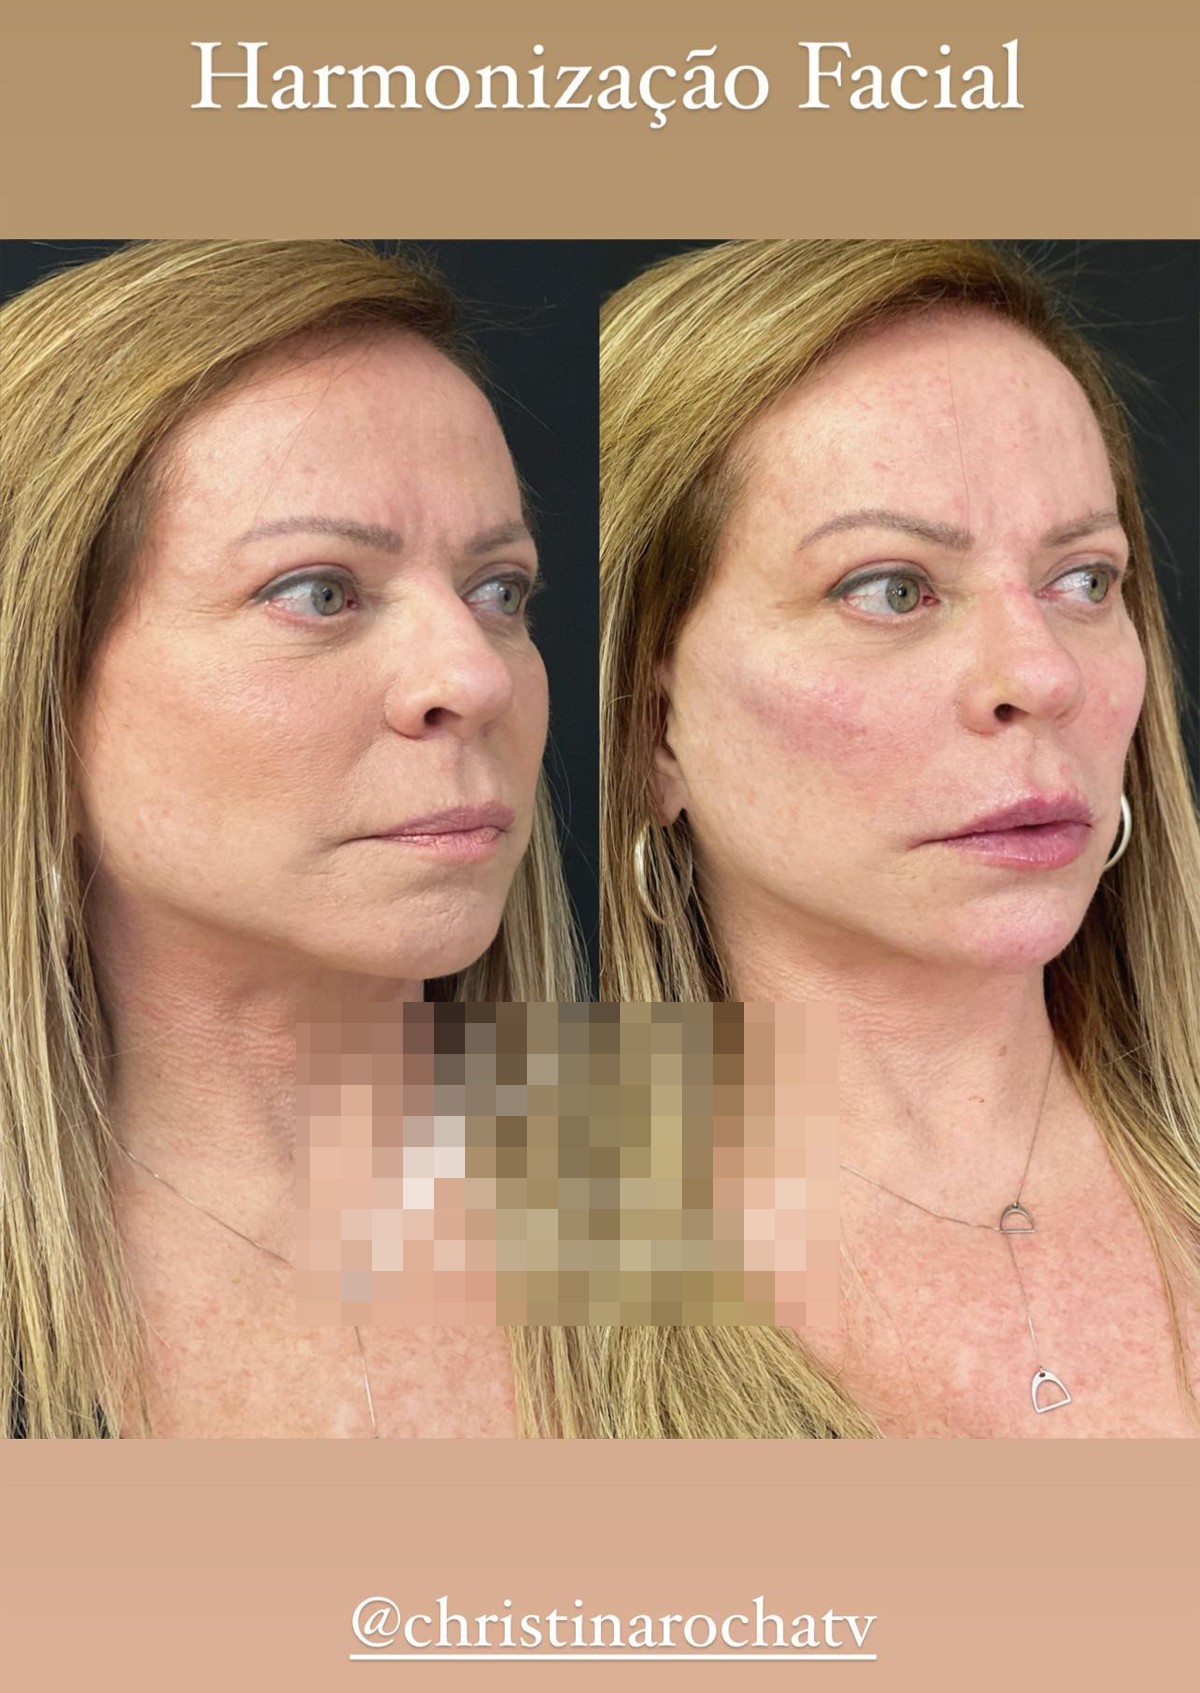 Christina Rocha antes e depois de harmonização facial (Foto: Reprodução/Instagram)